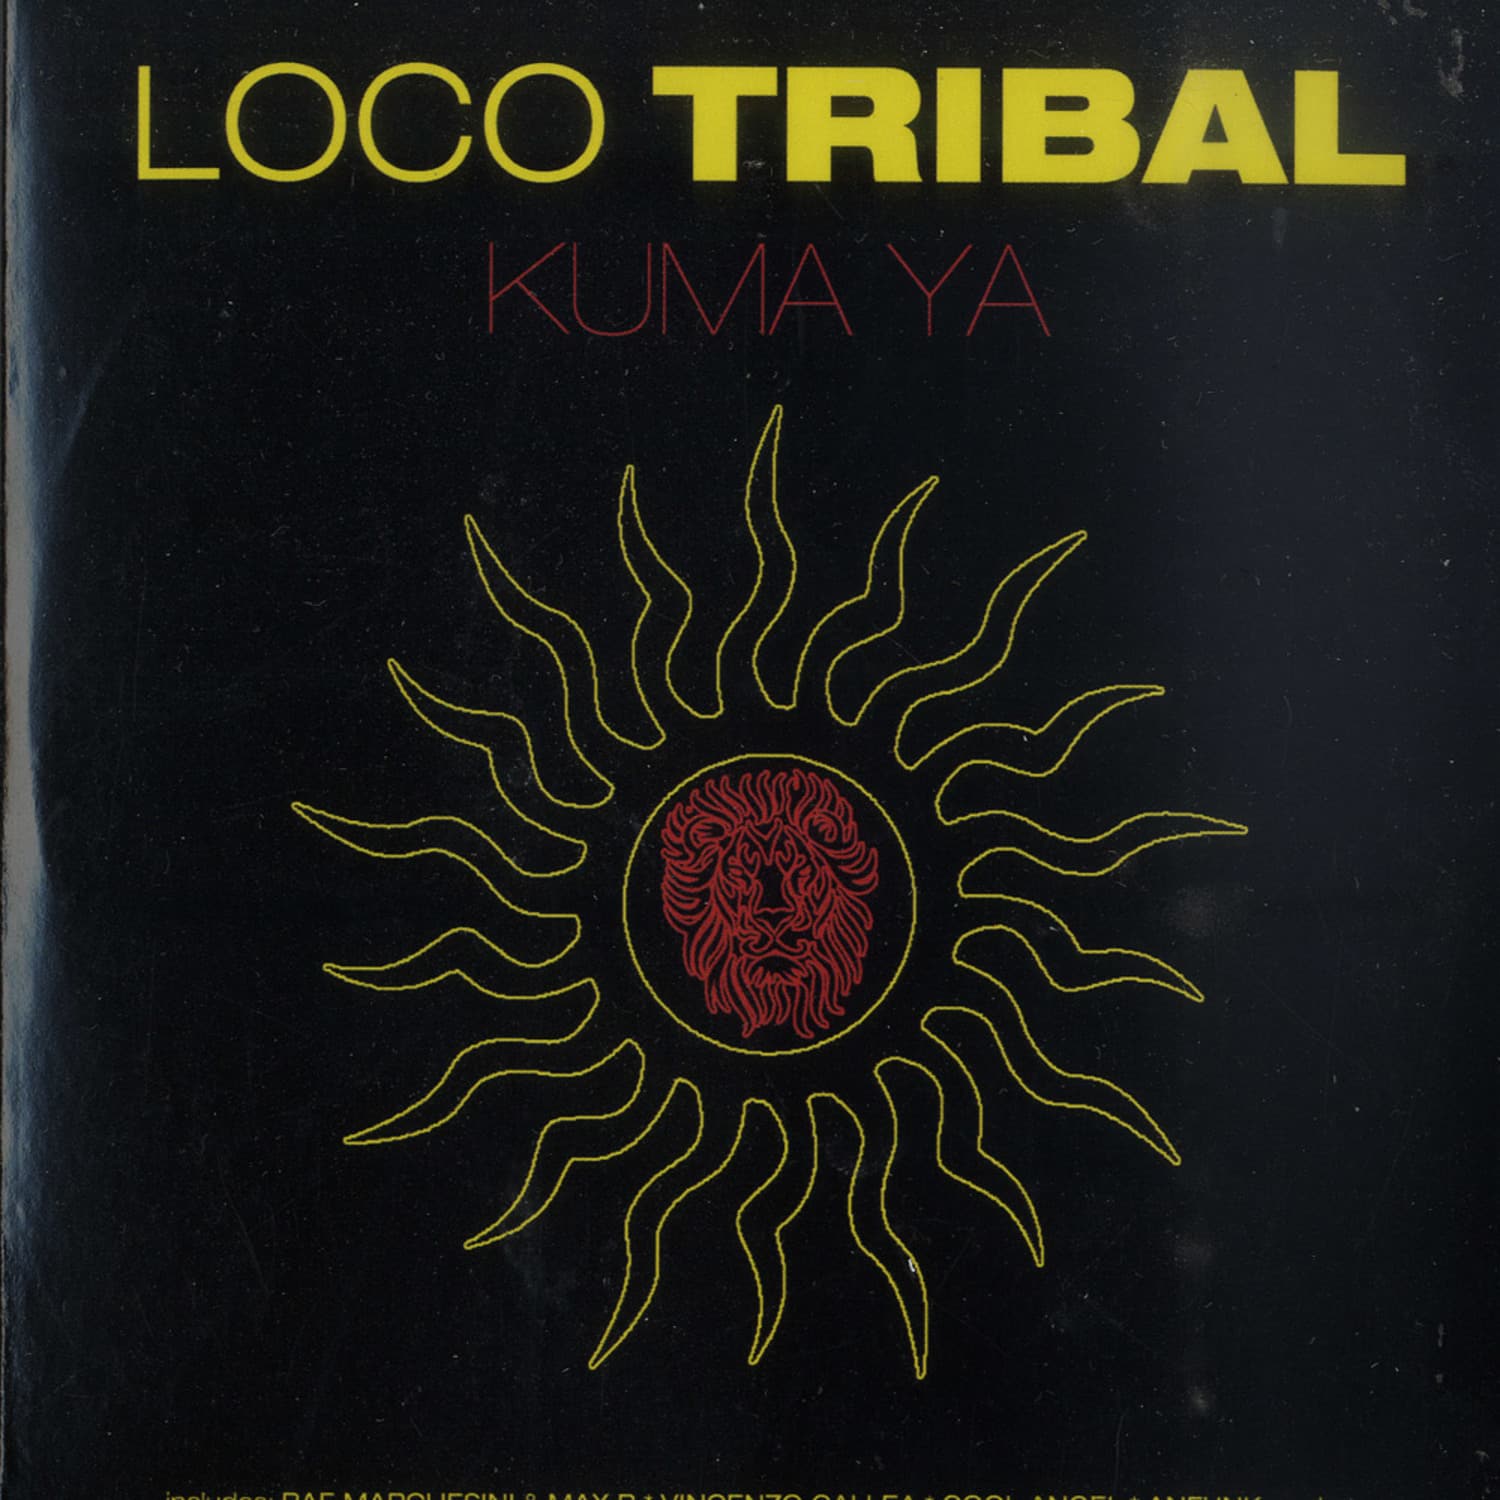 Loco Tribal - KUMA YA 